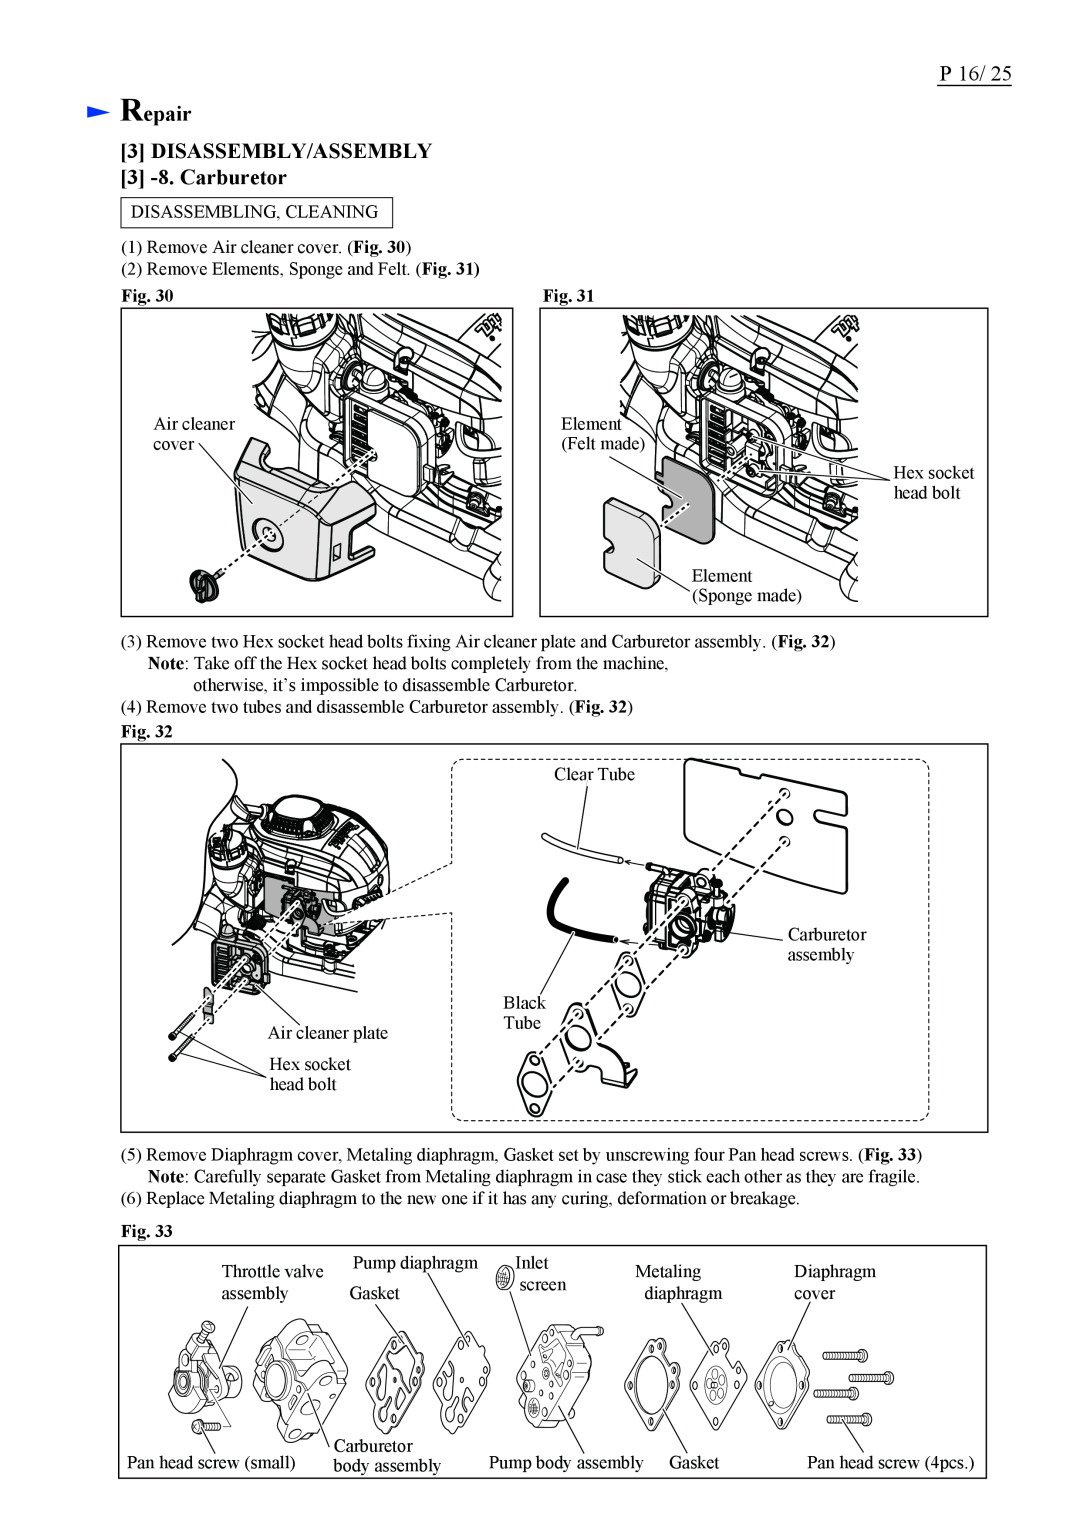 Makita EH7500S dimensions P, Repair 3 DISASSEMBLY/ASSEMBLY 3 -8. Carburetor 